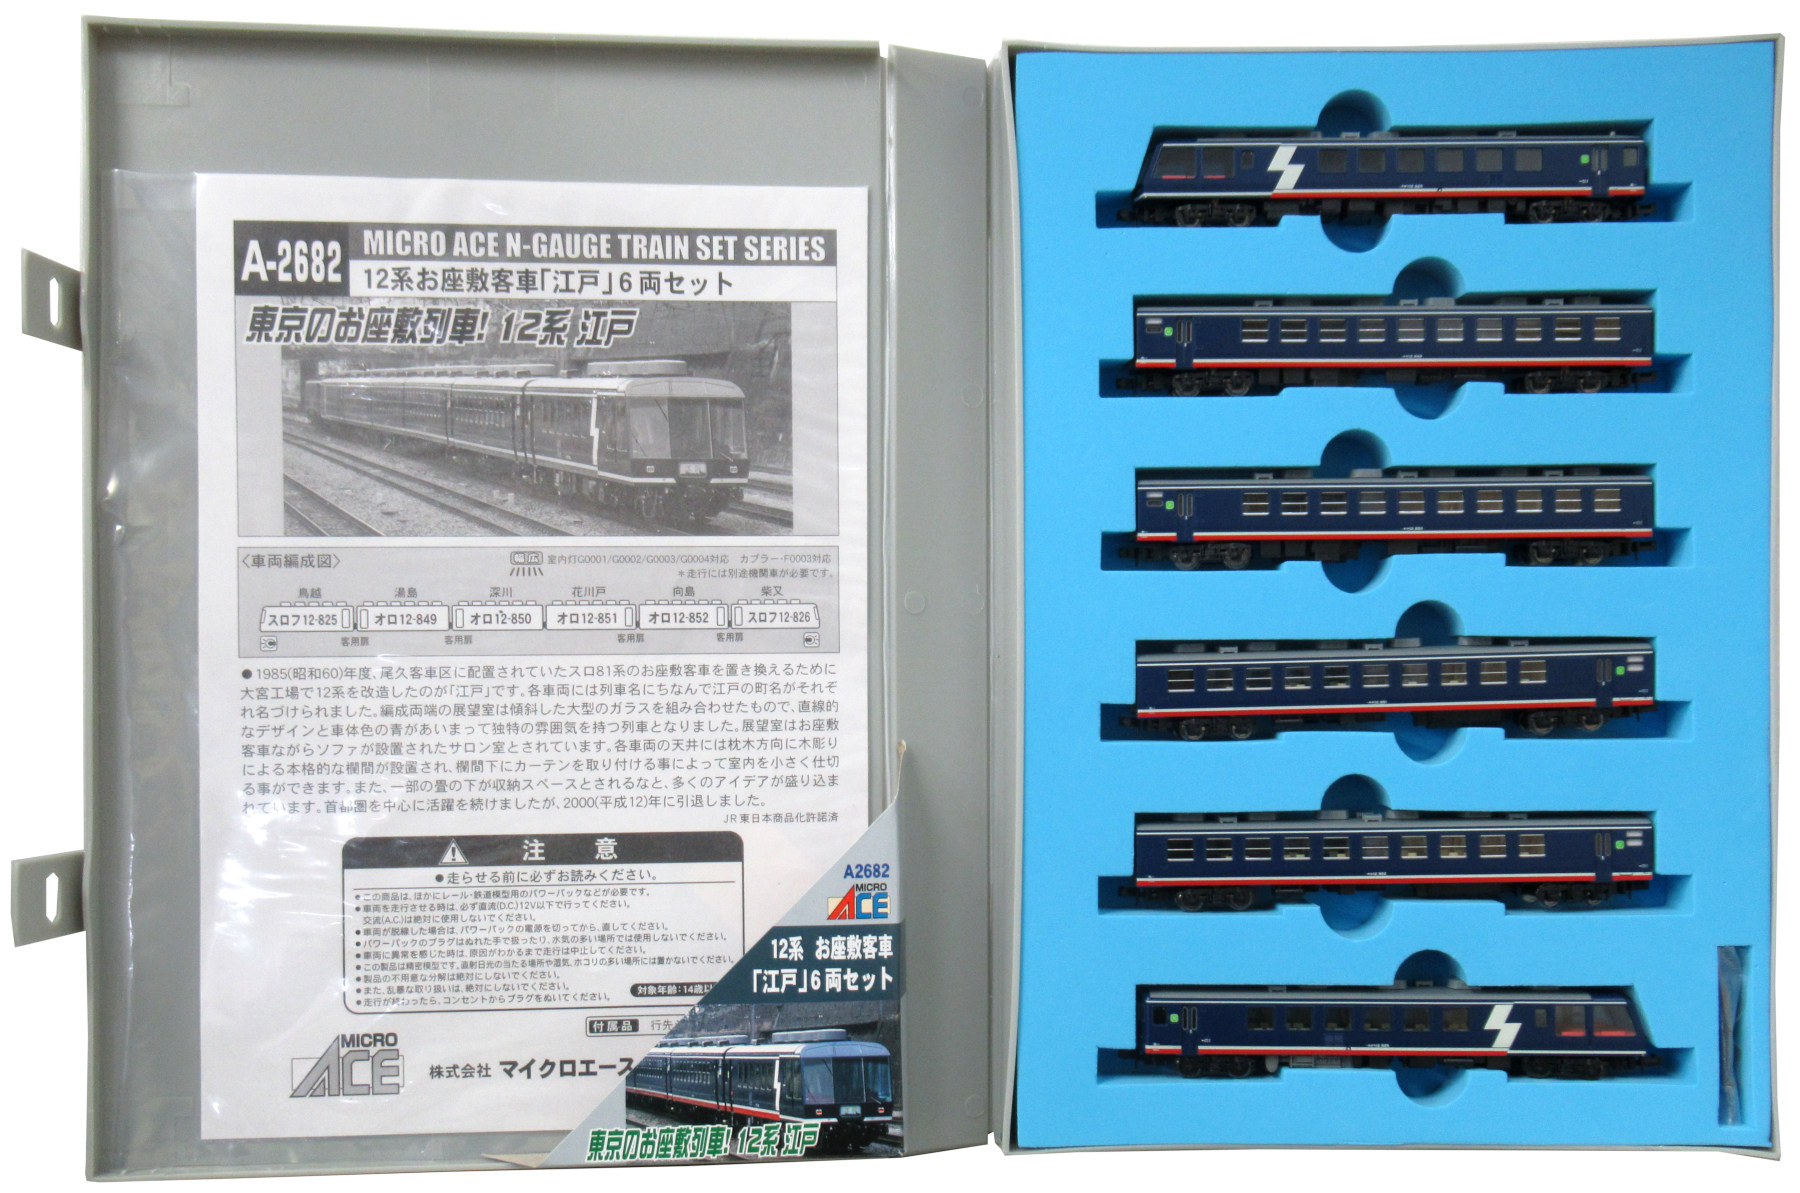 マイクロエース A-2682 12系 お座敷客車「江戸」６両セット - 鉄道模型